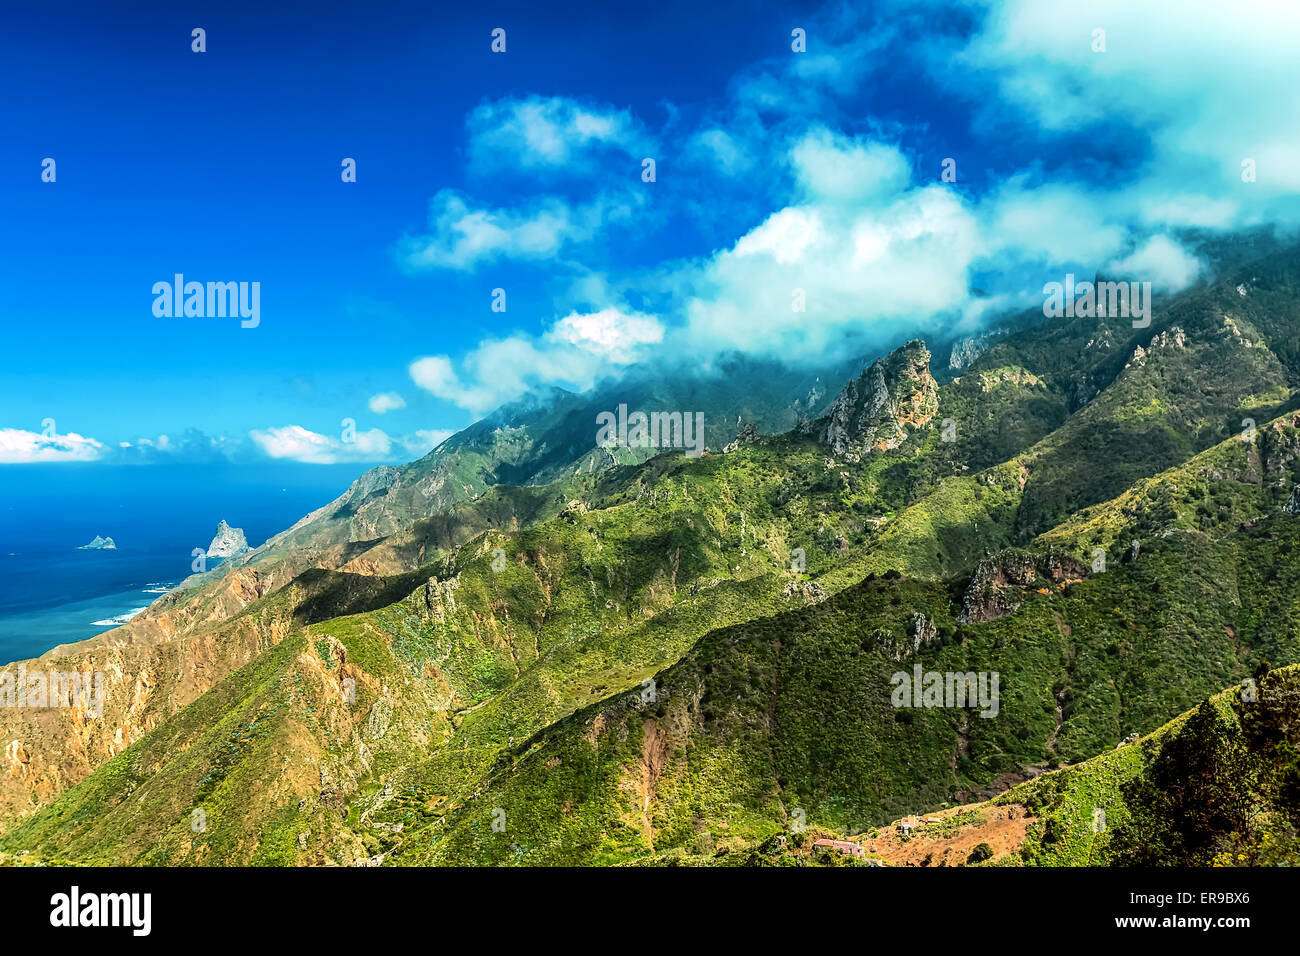 Nuvole e montagne verdi o rocce con cielo blu sullo sfondo vicino all'Oceano Atlantico paesaggio di Tenerife Isole Canarie, Spagna Foto Stock